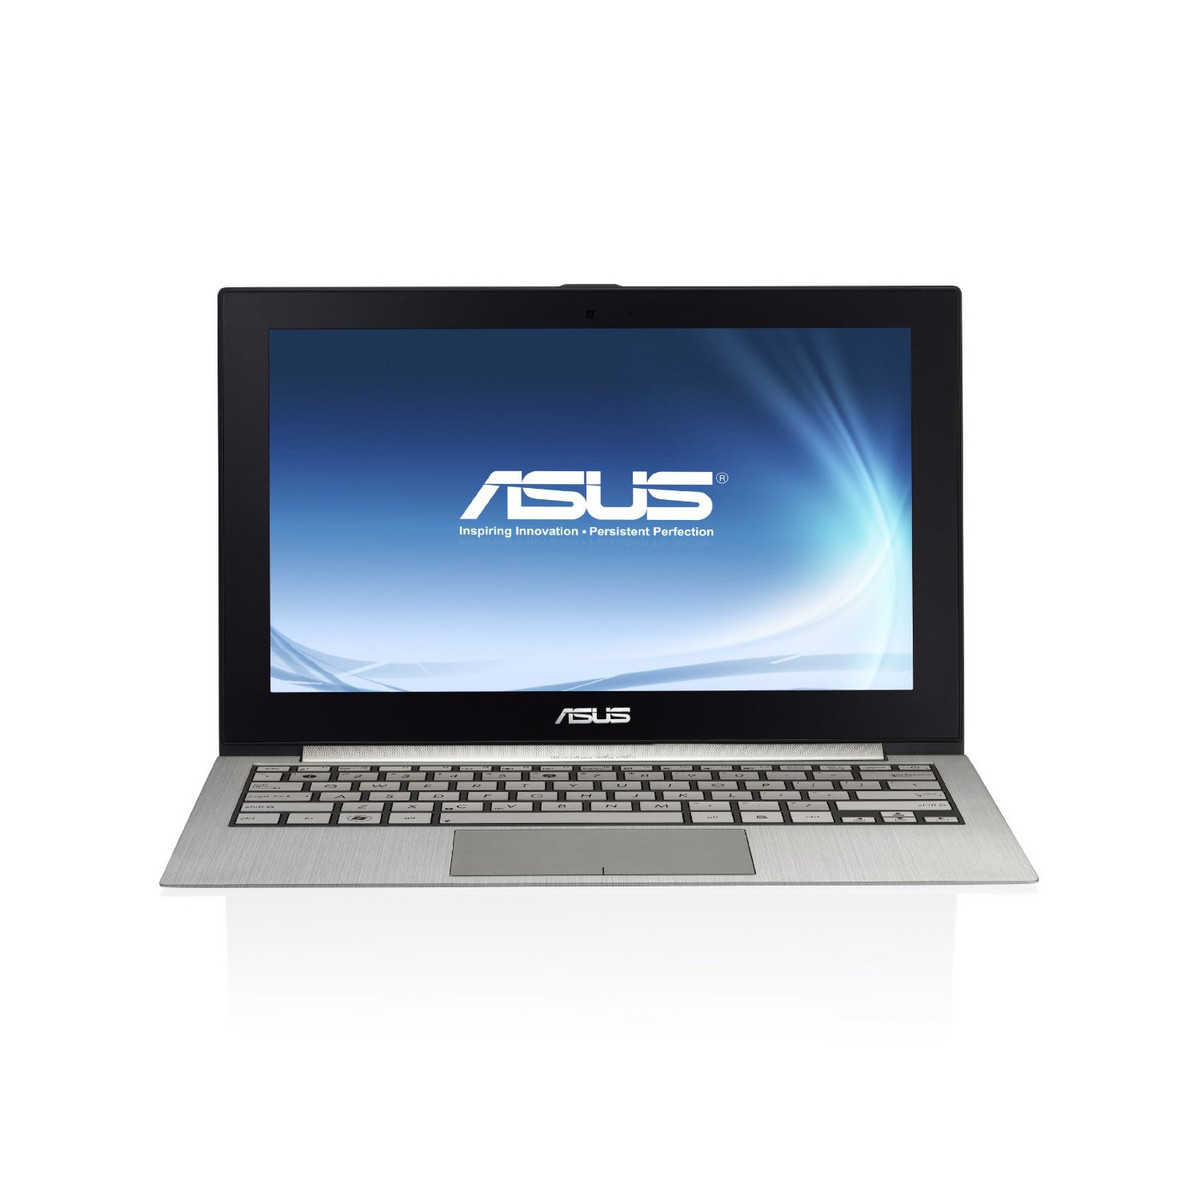 Asus Zenbook UX21E-DH71 - Notebookcheck.net External Reviews